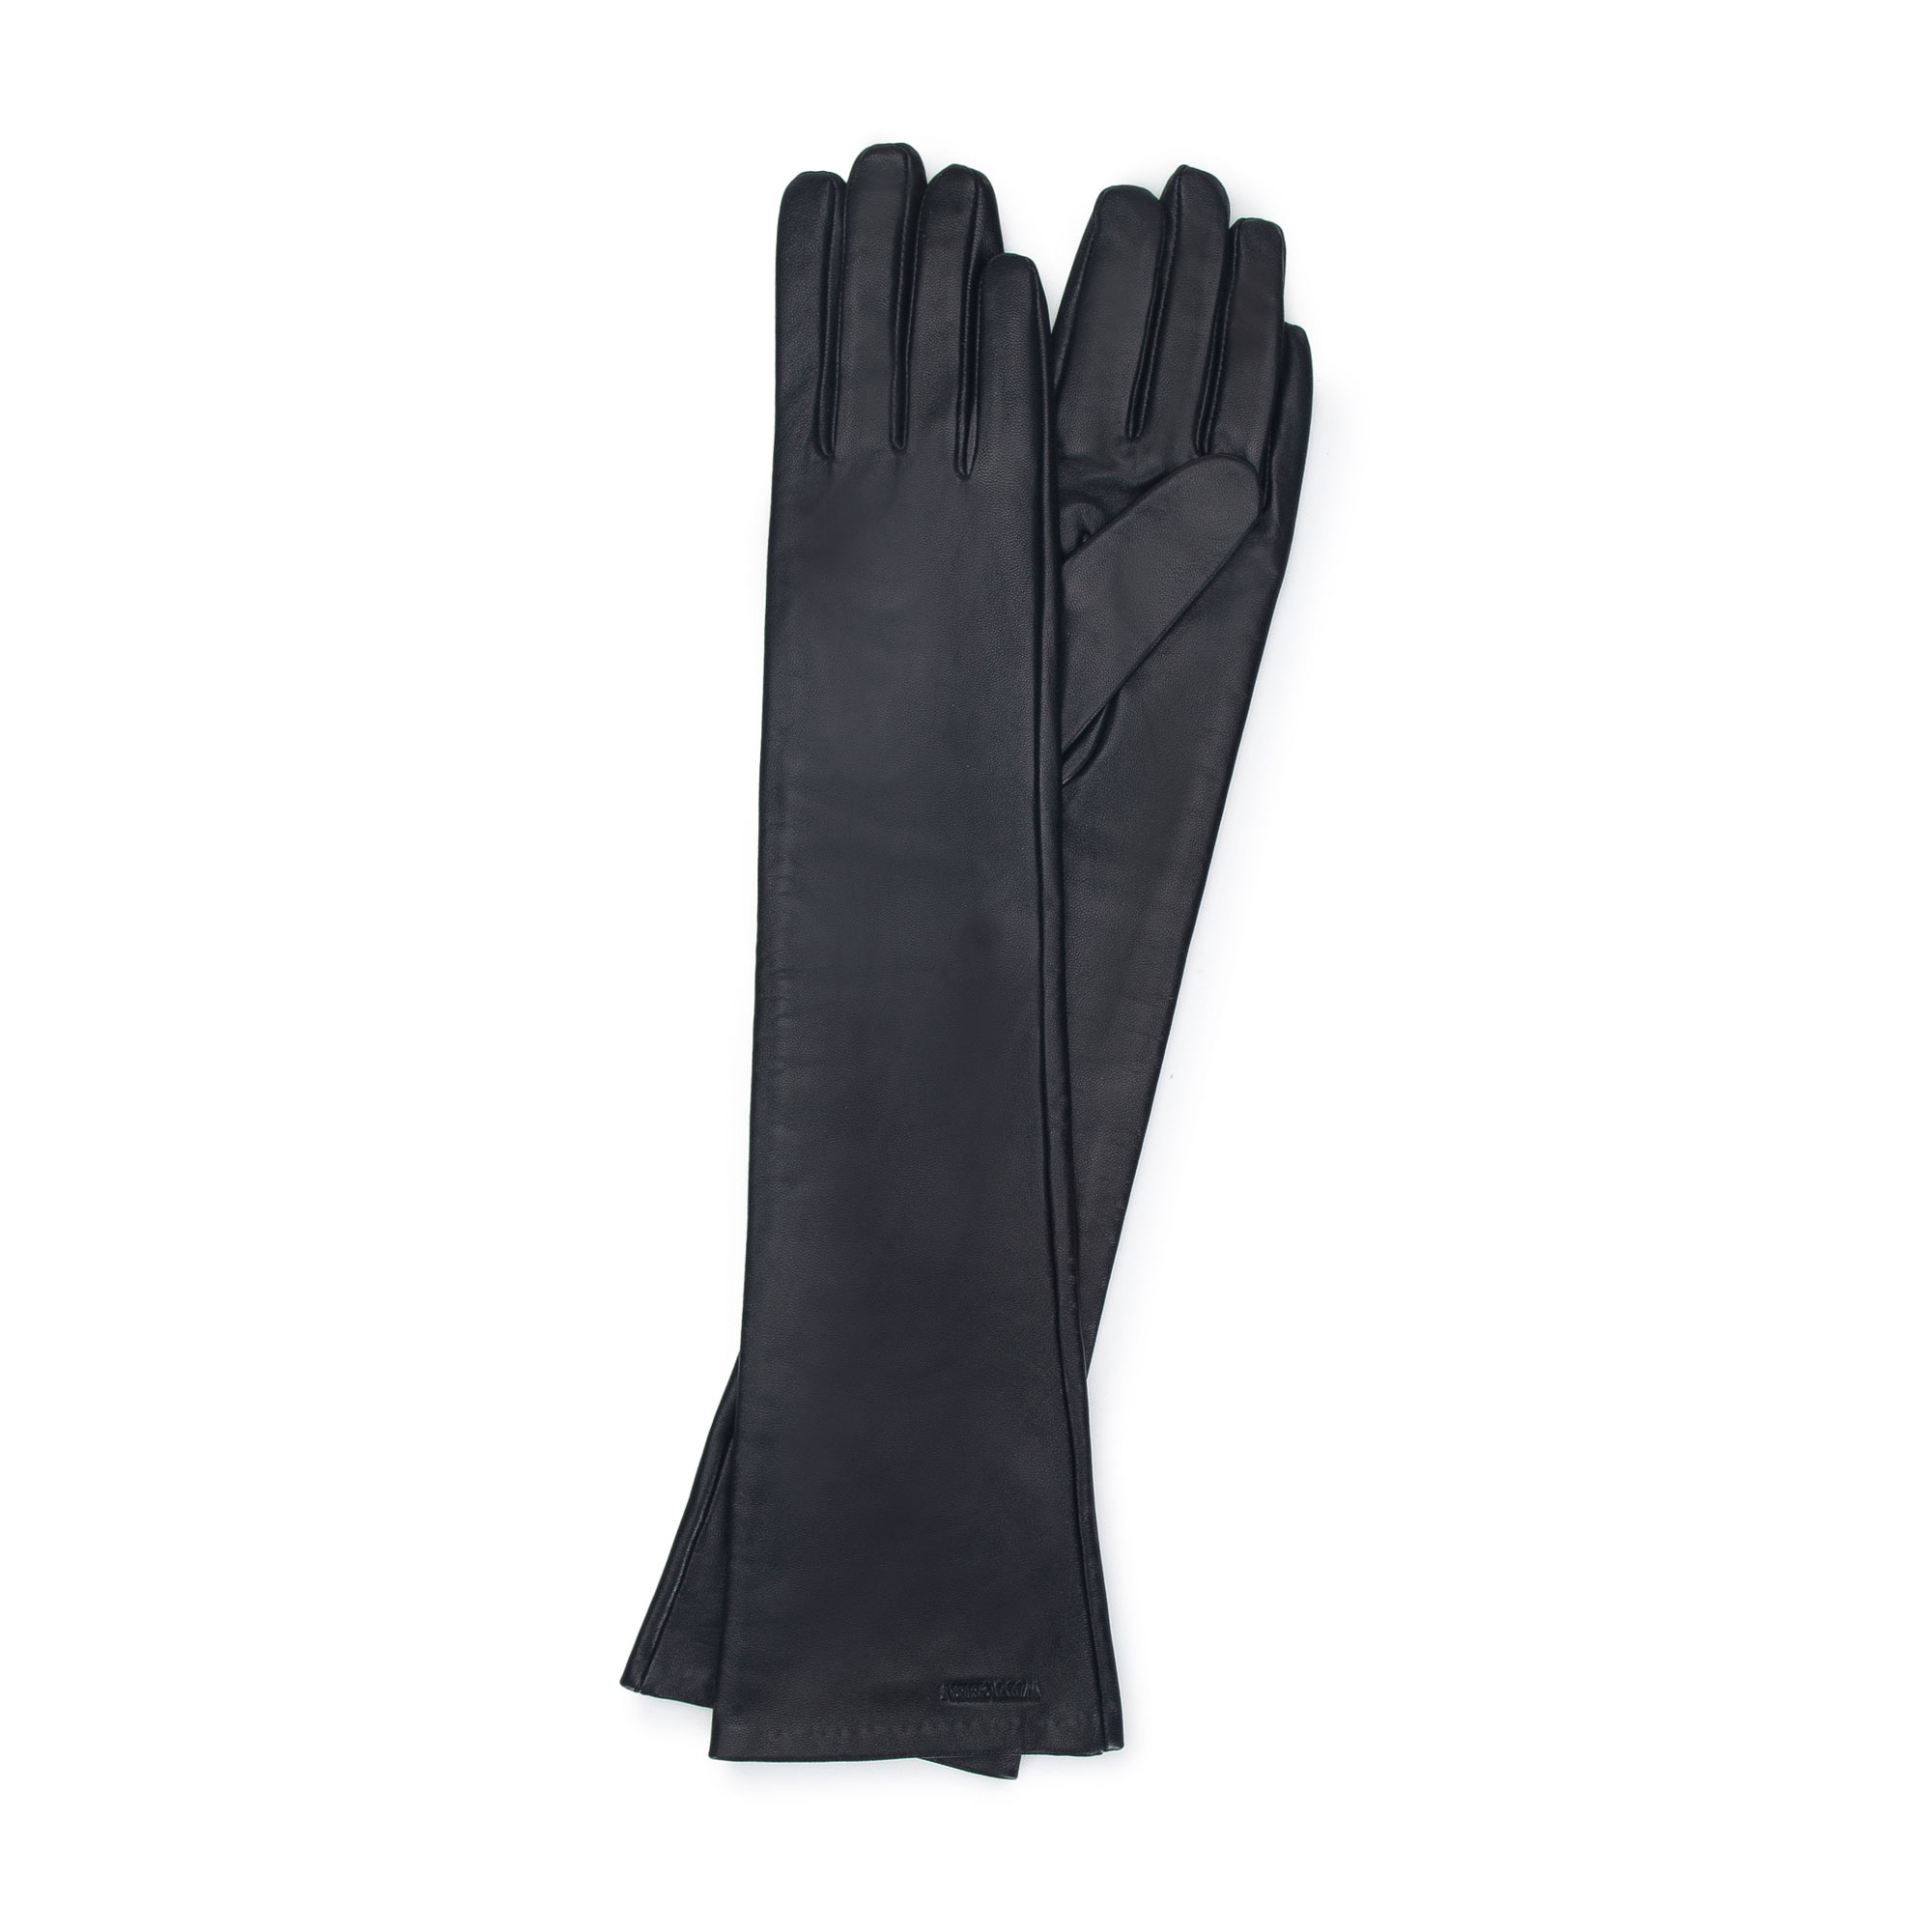 Damskie rękawiczki ze skóry długie czarne